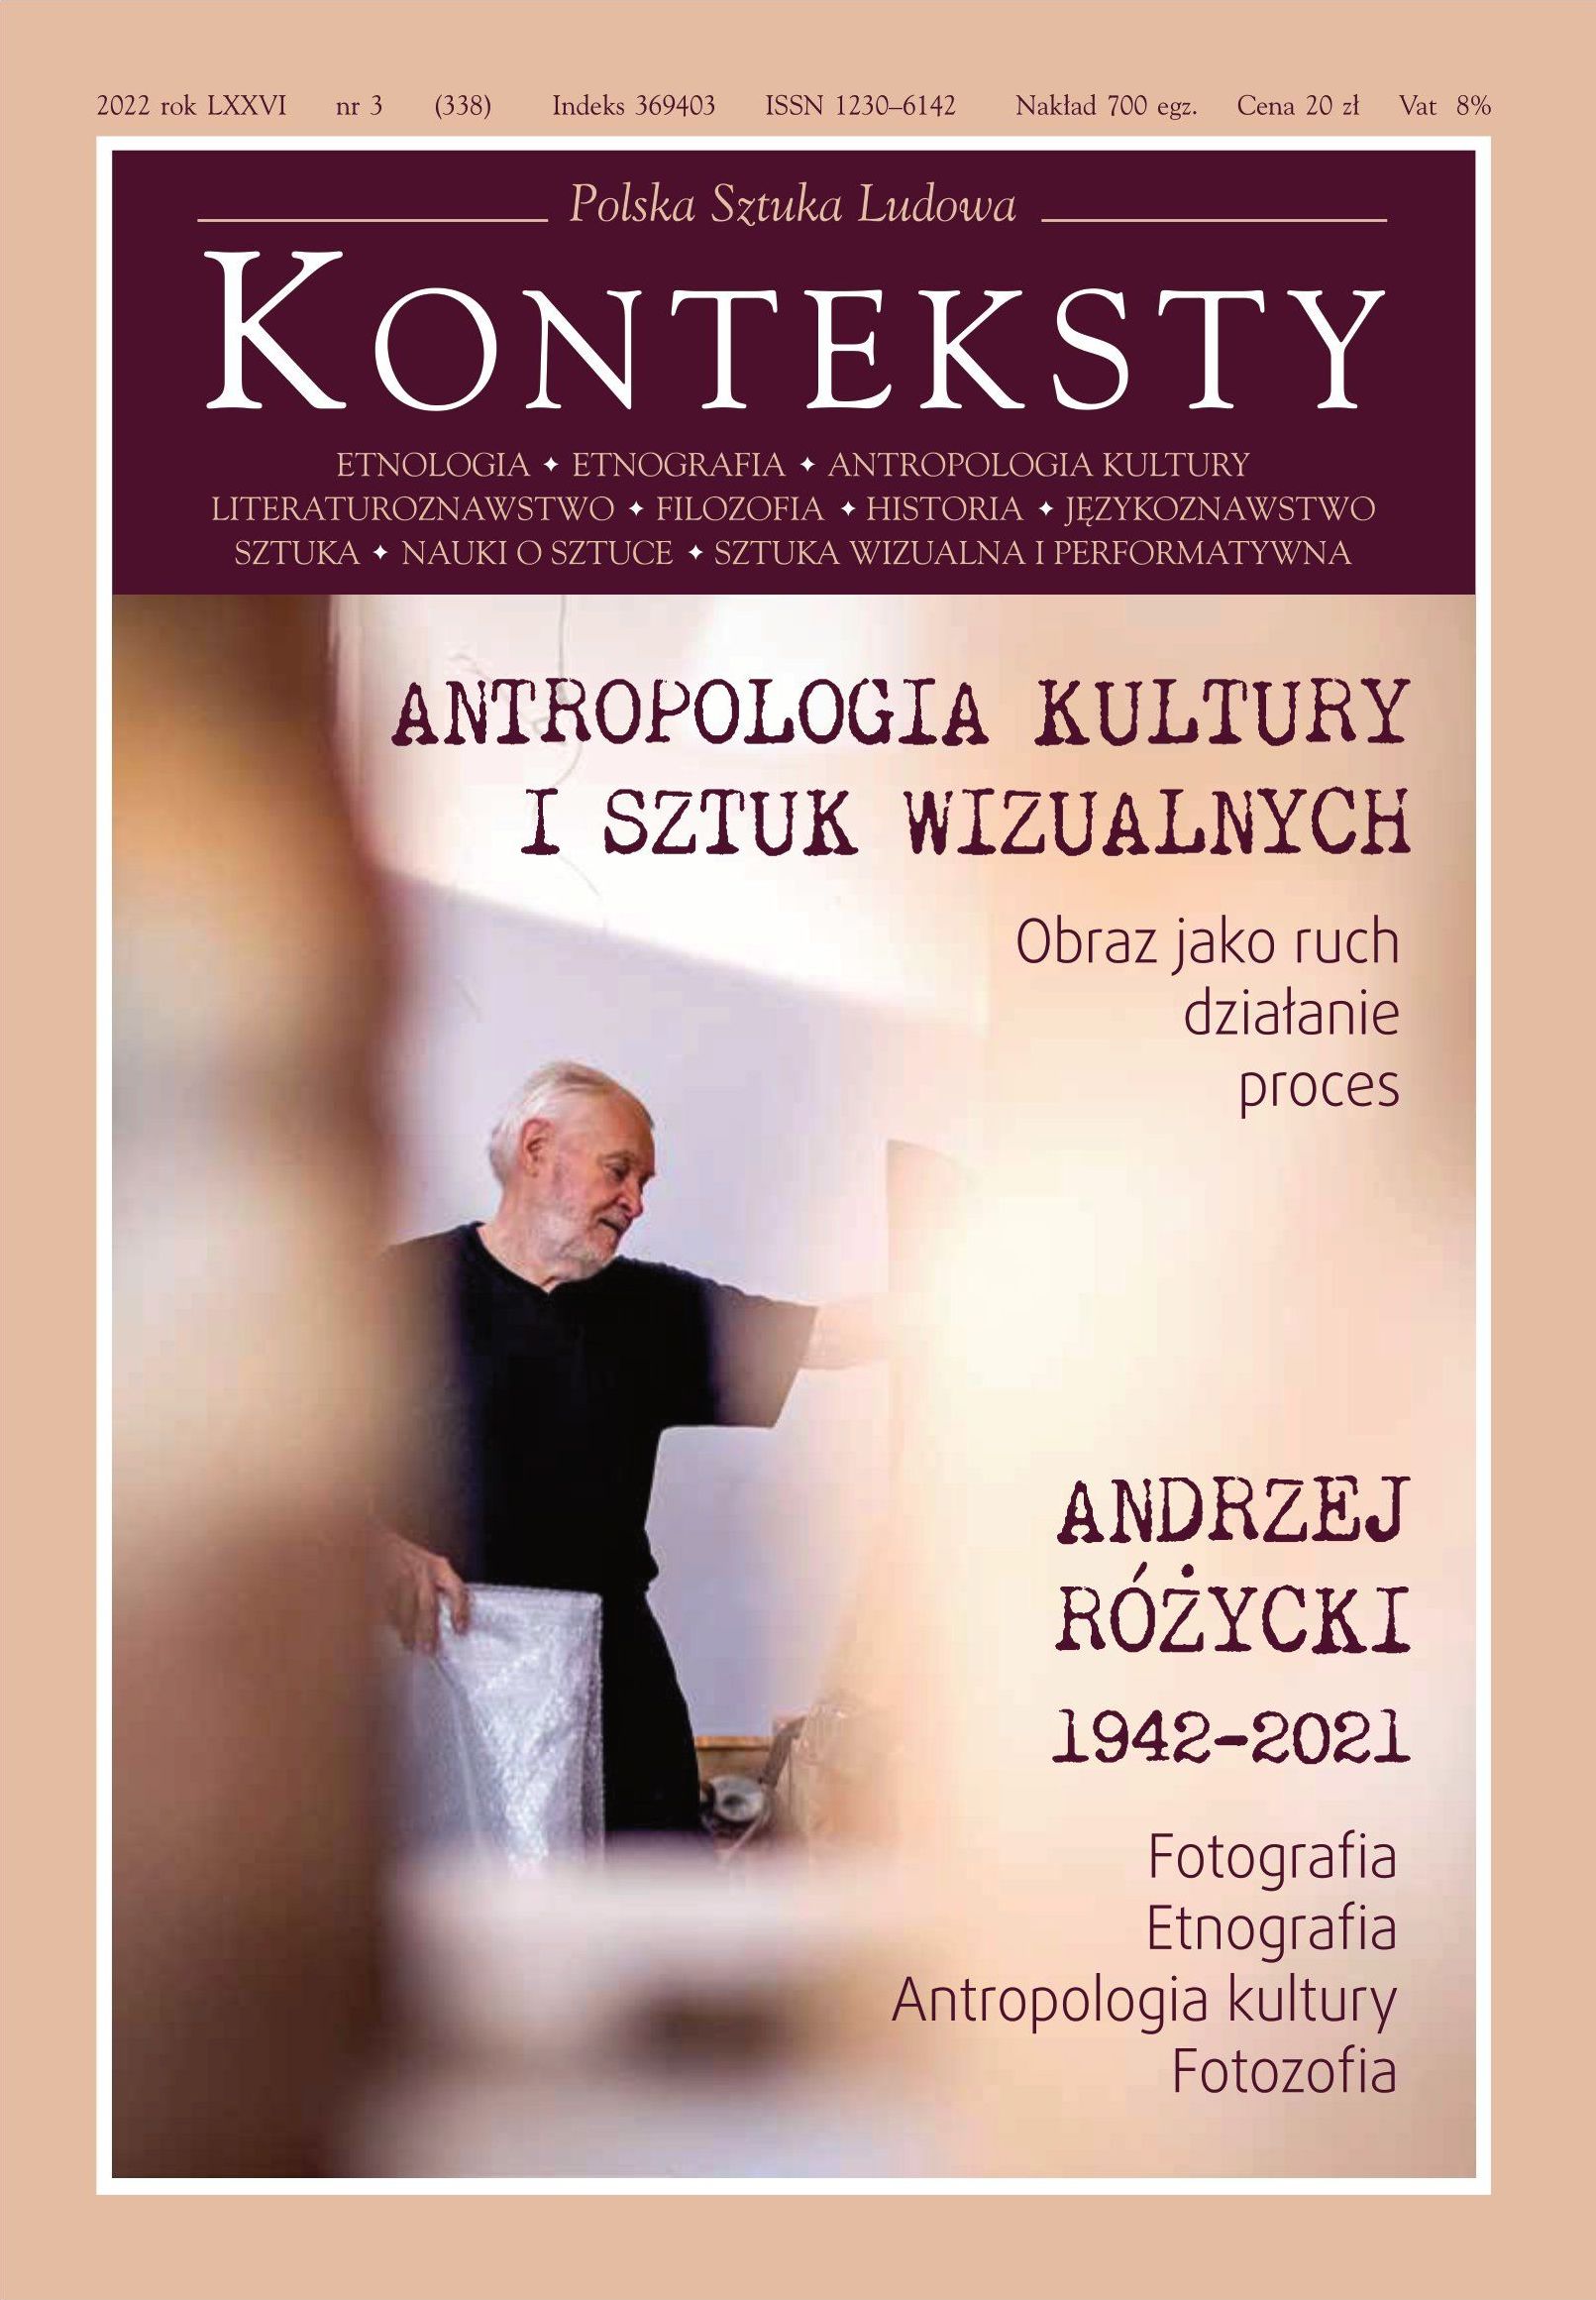 Andrzej Różycki. Fotograf i fotozof